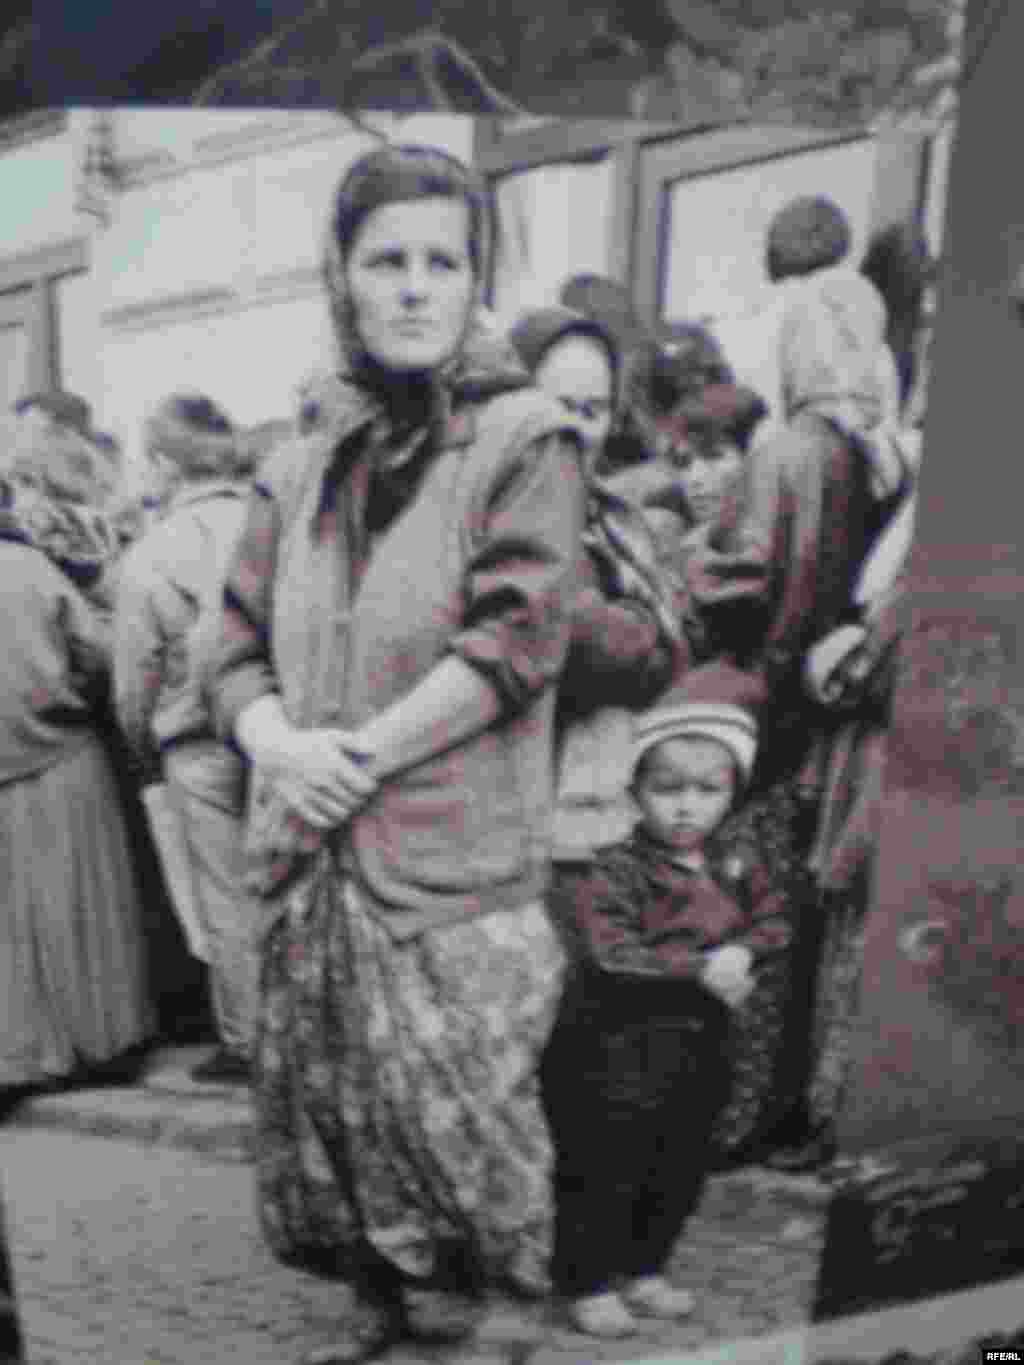 U povodu 15. obljetnice genocida u Srebrenici, Bosanski kulturni centar u Tuzli organizirao je izložbu fotografija Amela Emrića “Srebrenica 19952010″. Izložba je zapravo priča o Srebrenici i njenim stanovnicima u periodu mart 1993. - juli 2009. i svjedoči o izbjegličkim konvojima iz Cerske i Srebrenice, padu Srebrenice, preživljavanju u izbjegličkom i povratničkom životu, potragom za nestalima i bolnom 11. julu. Foto:Maja Nikolić